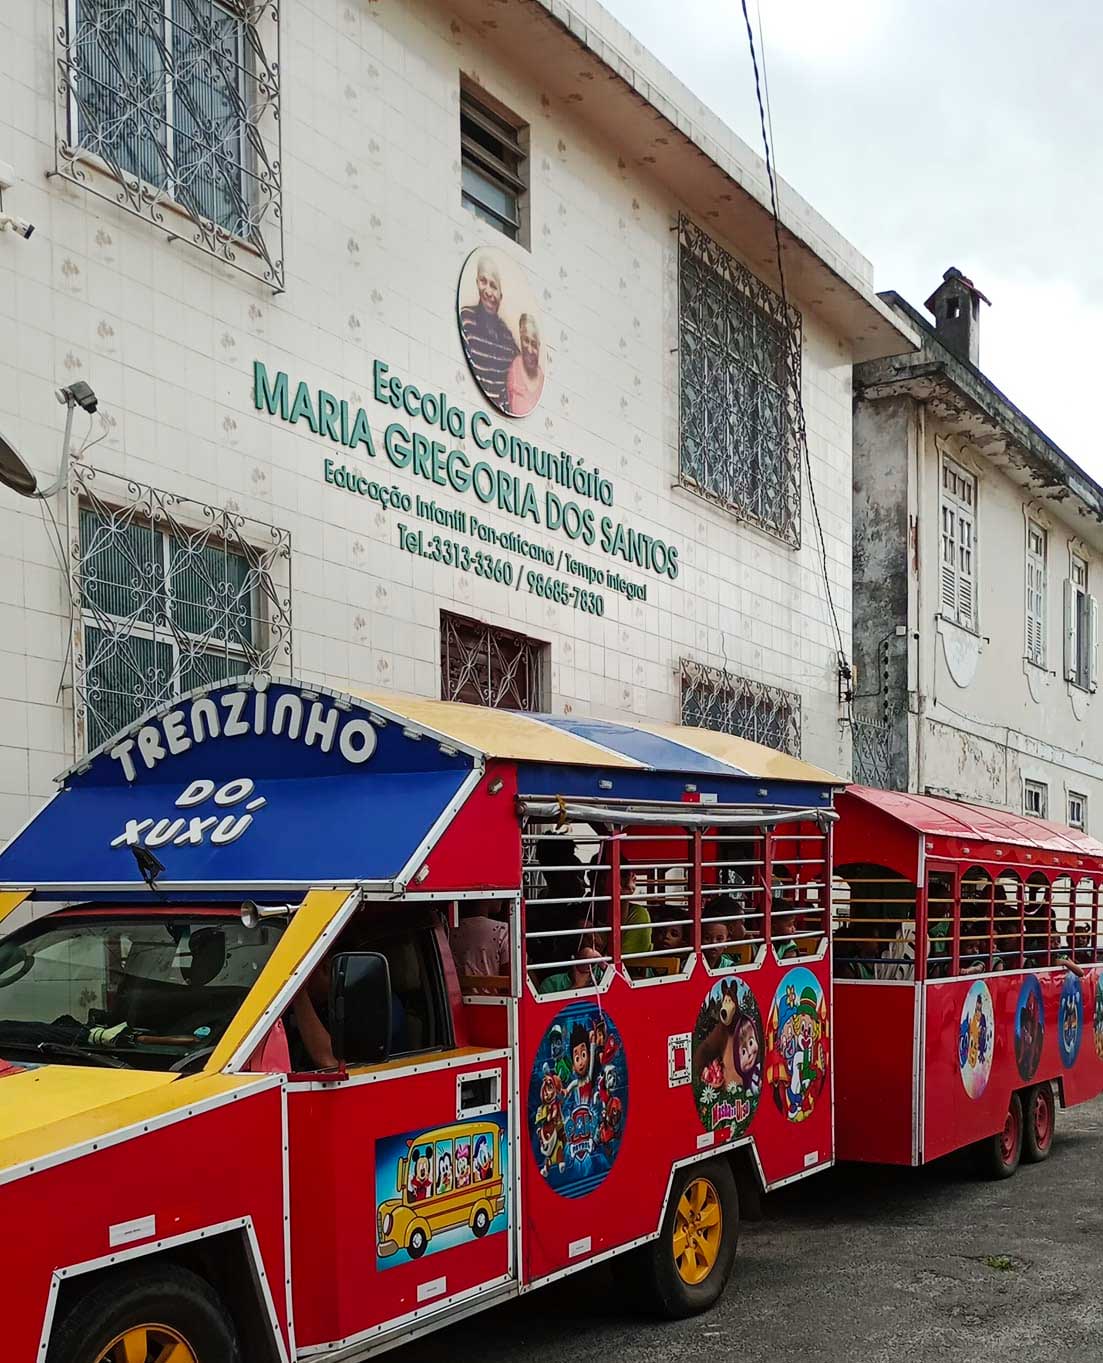 Trenzinho do Xuxú em frente a Escola Comunitária Maria Gregória (Imagem: Divulgação)